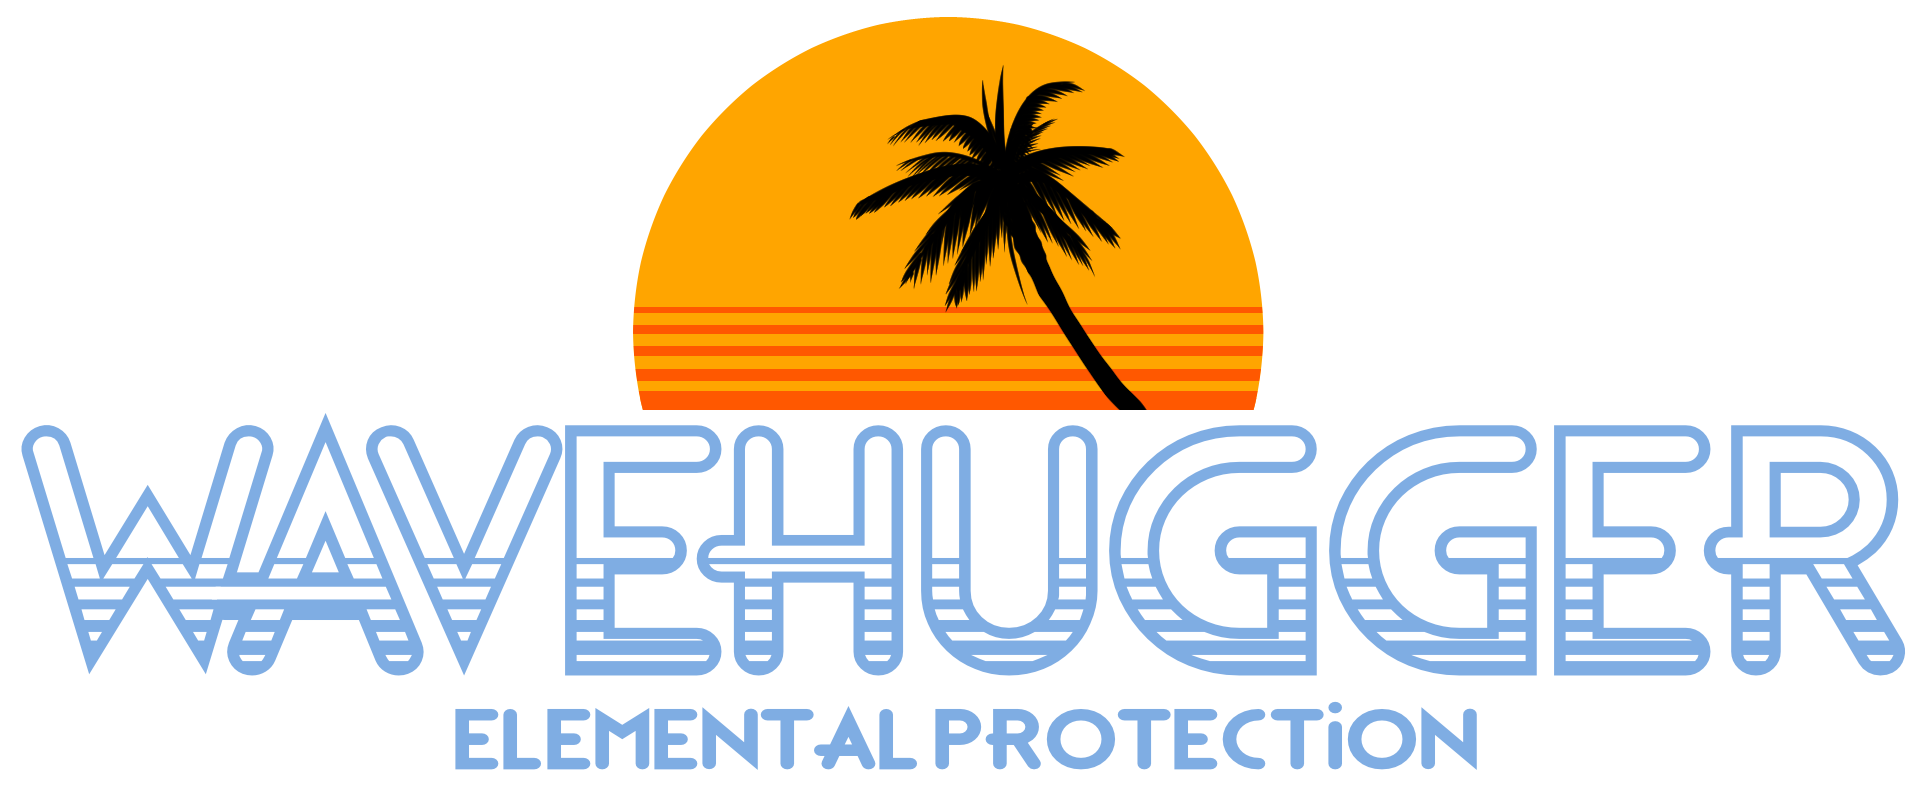 Wave Hugger Elemental Protection